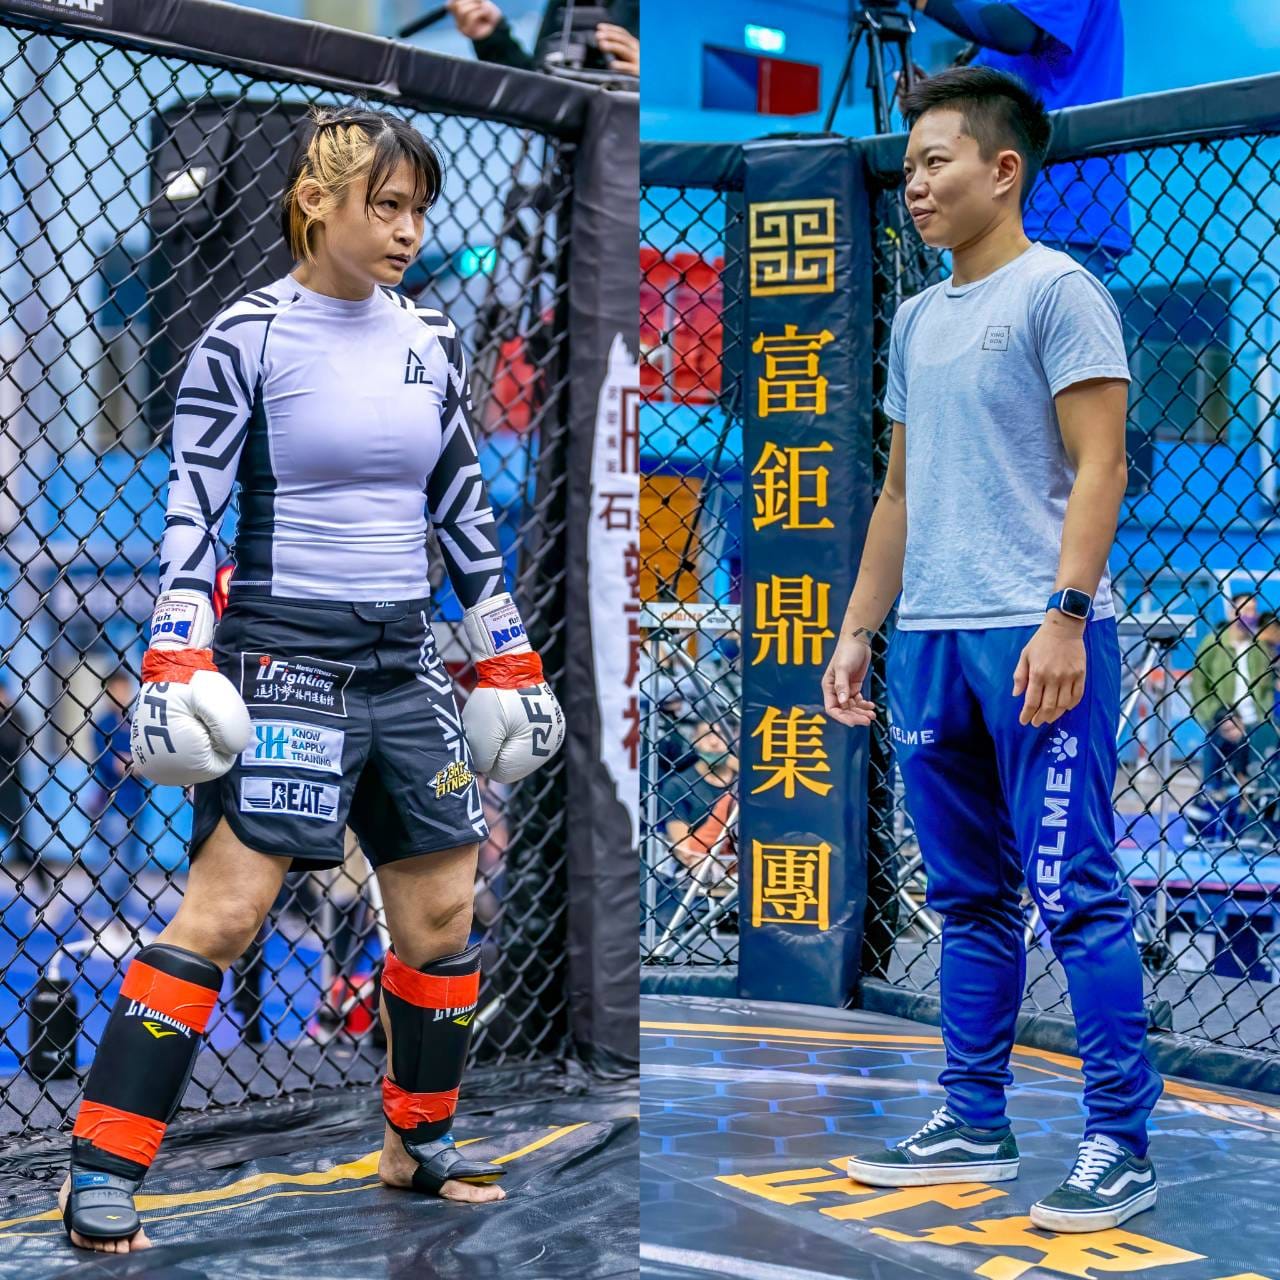 職業MMA選手吳巧貞(左)對上泰拳女坦克蔡育瑄將進行混合搏擊與MMA規則的對戰。WODT提供